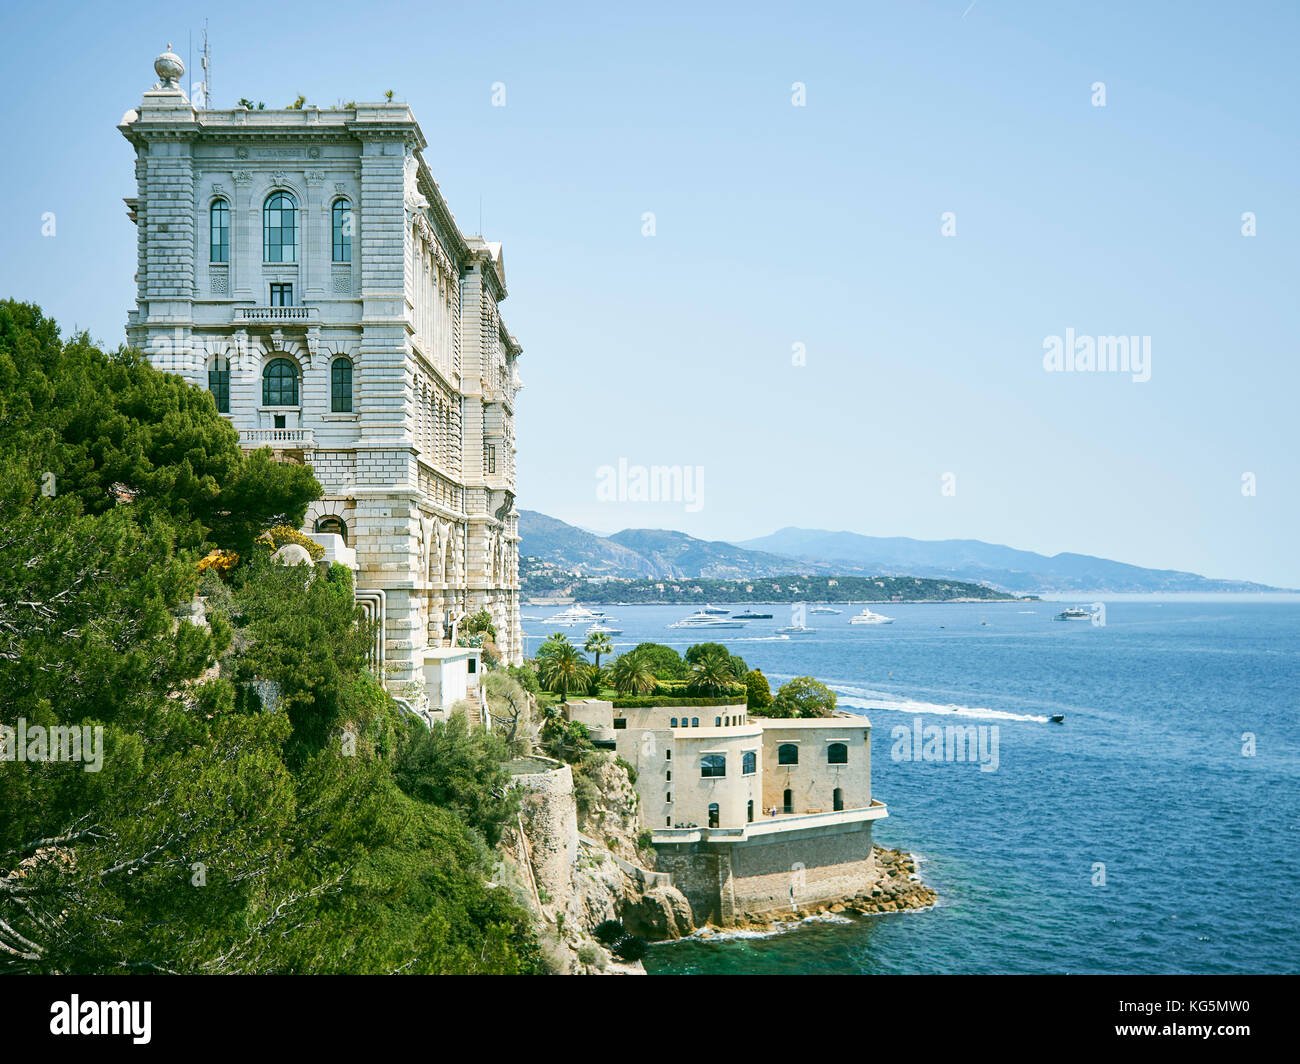 Musée de l'Institut océanographique de Monaco, principauté de monaco, cote d'azur, sud de la France, l'Europe occidentale, Europe Banque D'Images